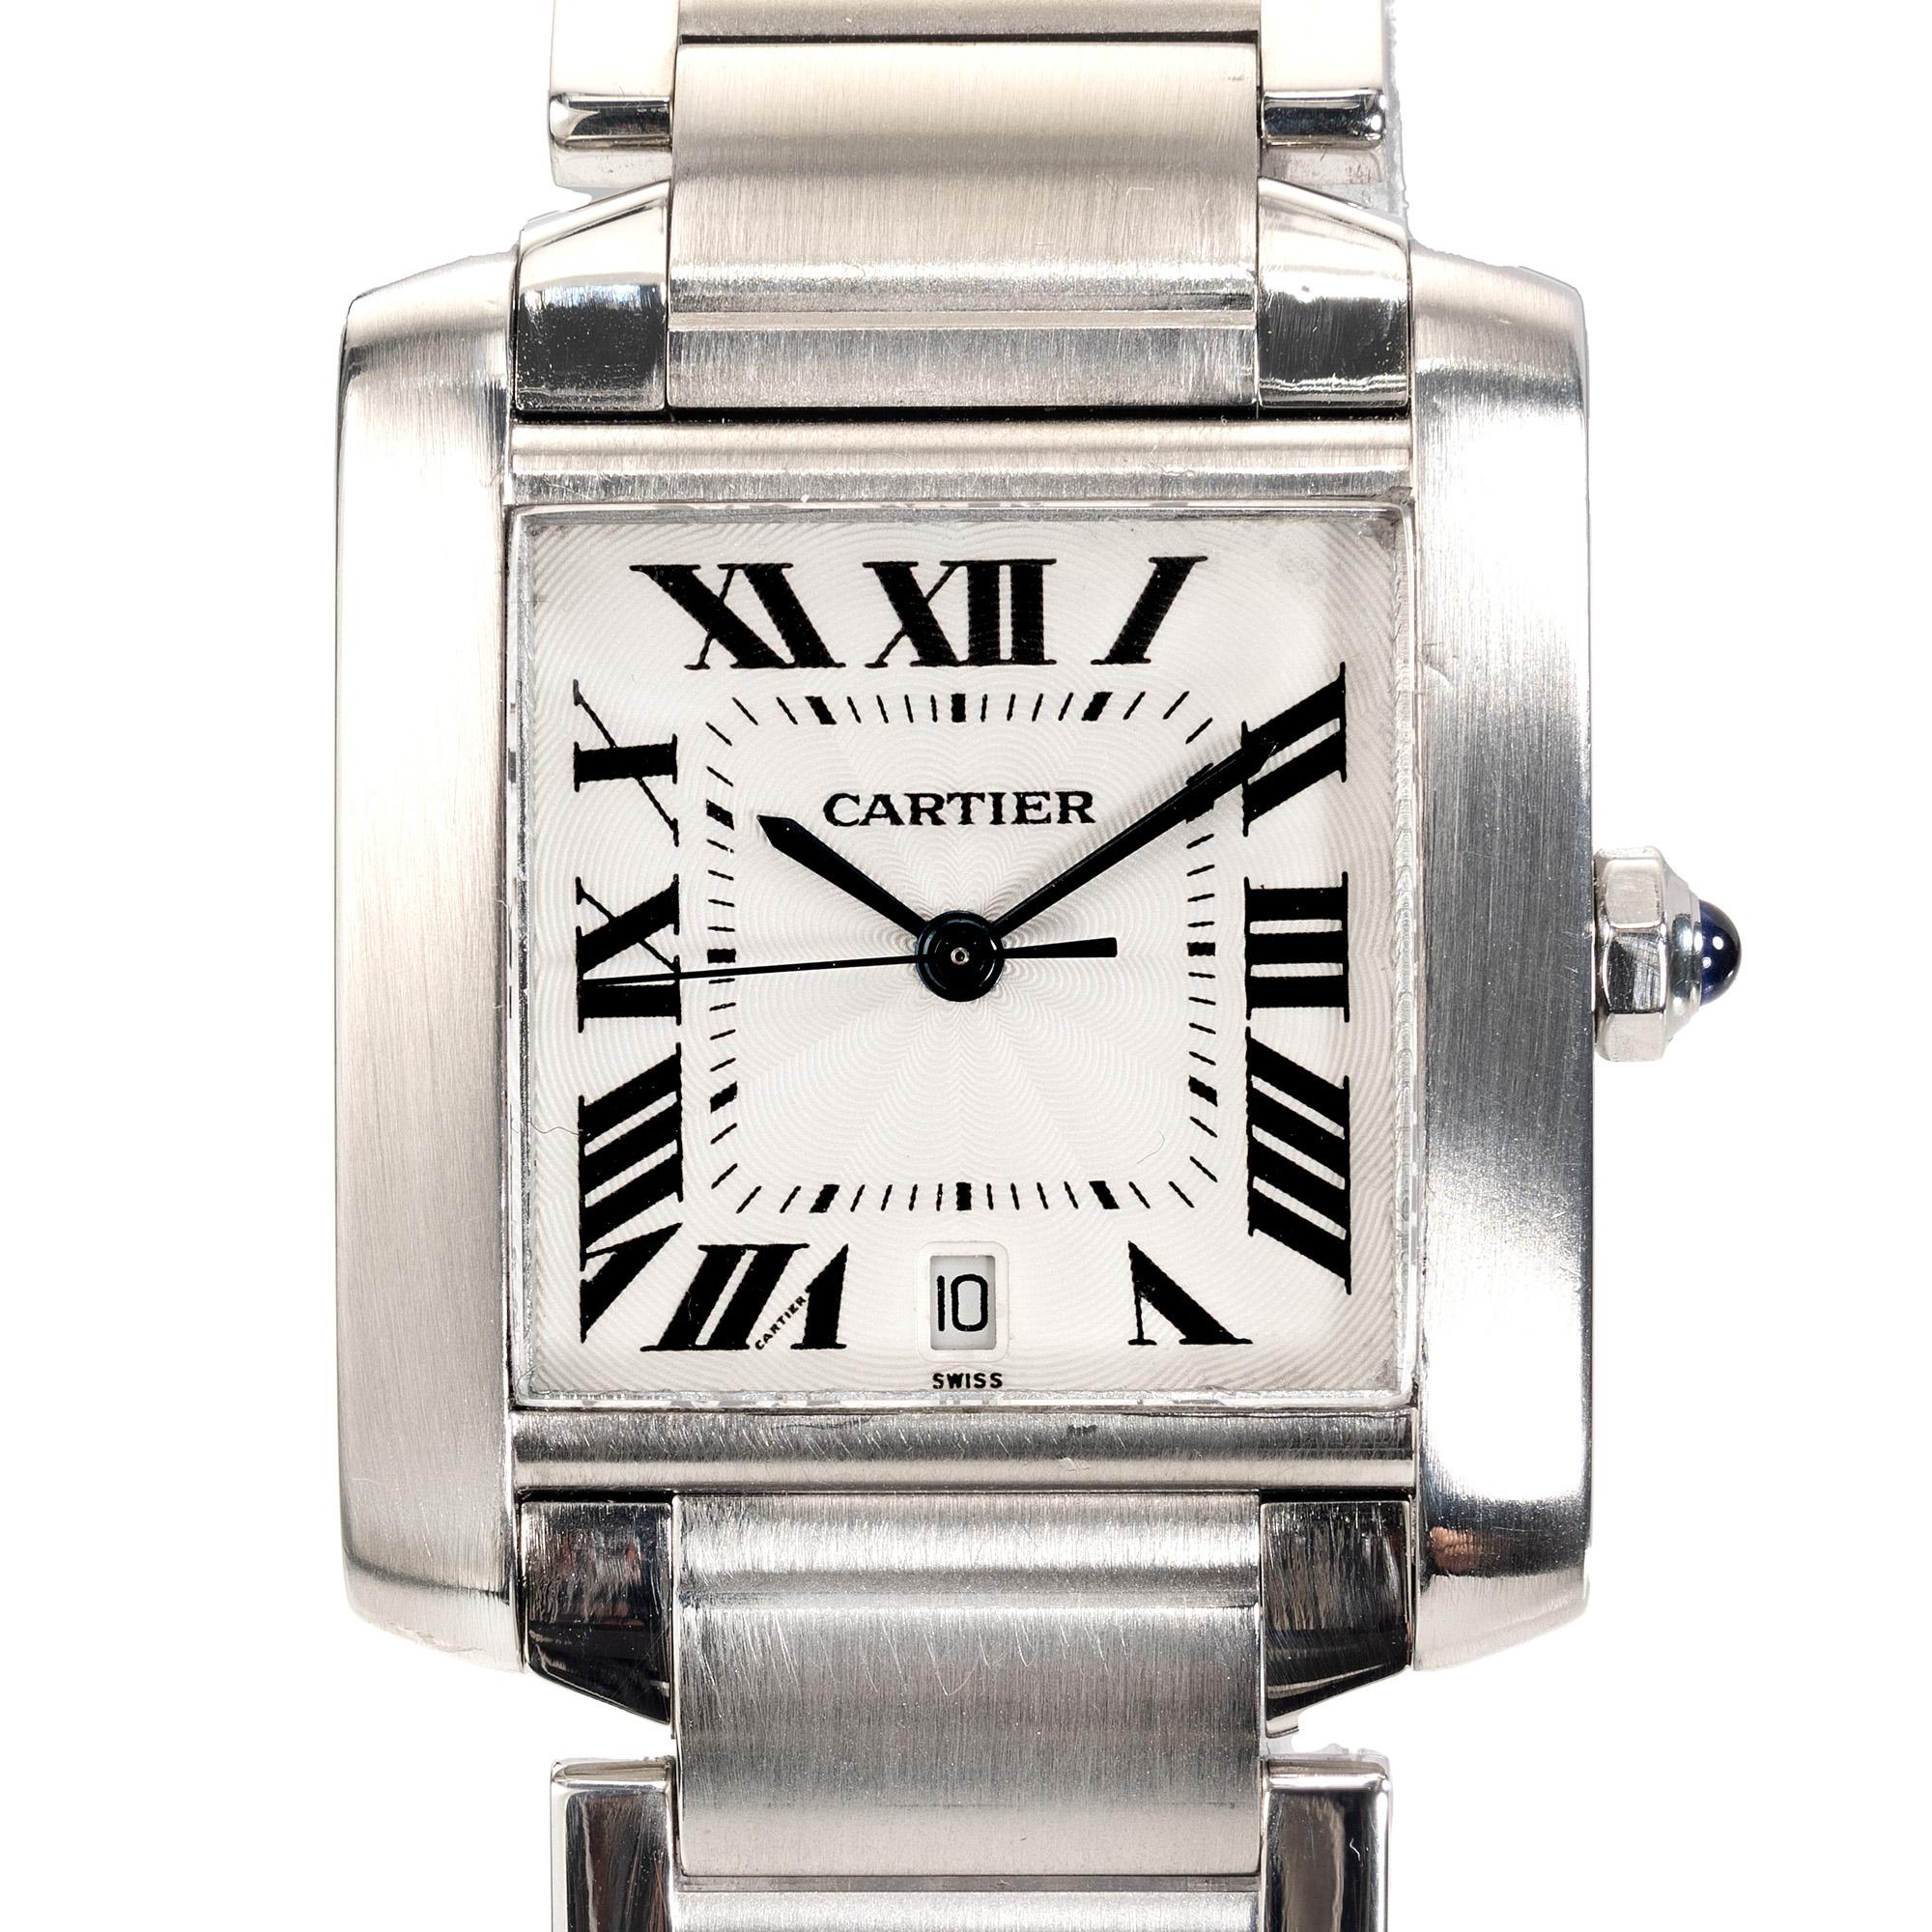 La montre-bracelet Tank Francaise en acier inoxydable de Cartier incarne la sophistication intemporelle. Son boîtier élégant en acier inoxydable dégage un charme moderne, tandis que le cadran emblématique présente un mélange de luxe et de